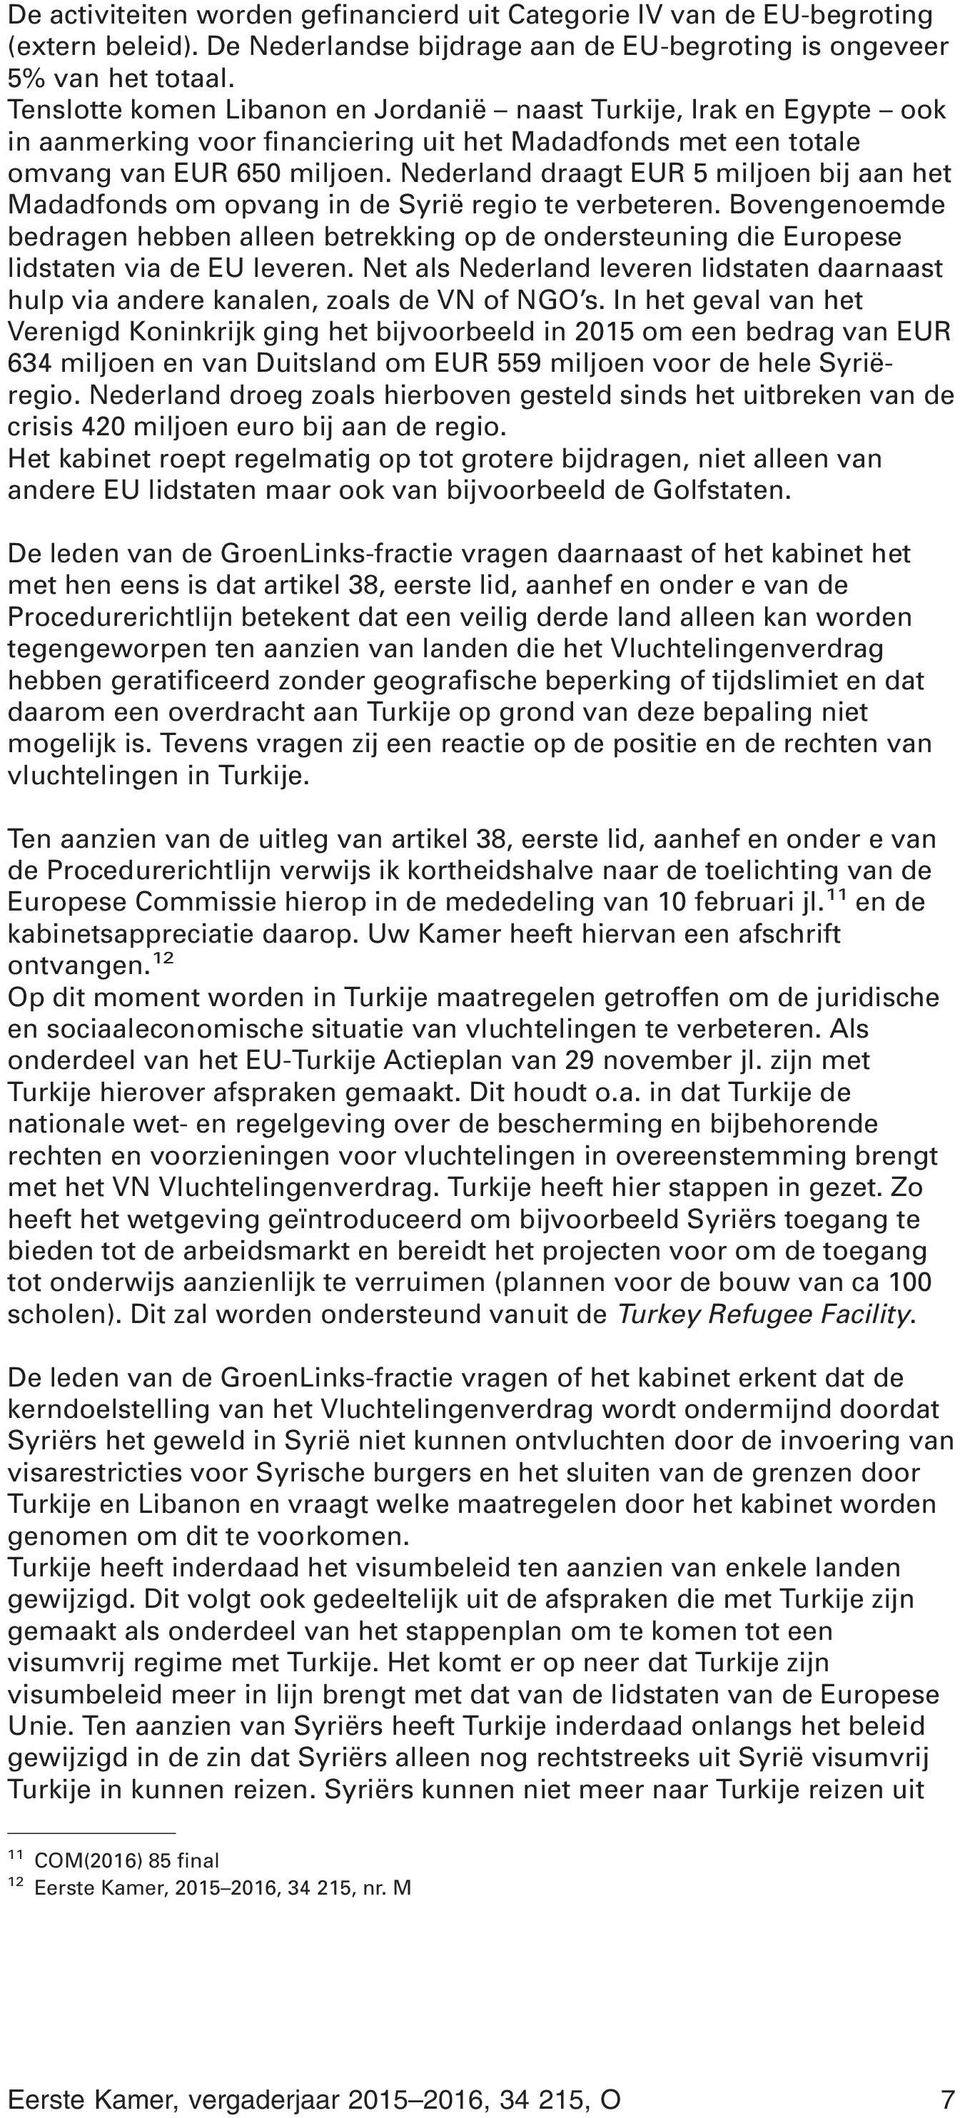 Nederland draagt EUR 5 miljoen bij aan het Madadfonds om opvang in de Syrië regio te verbeteren.